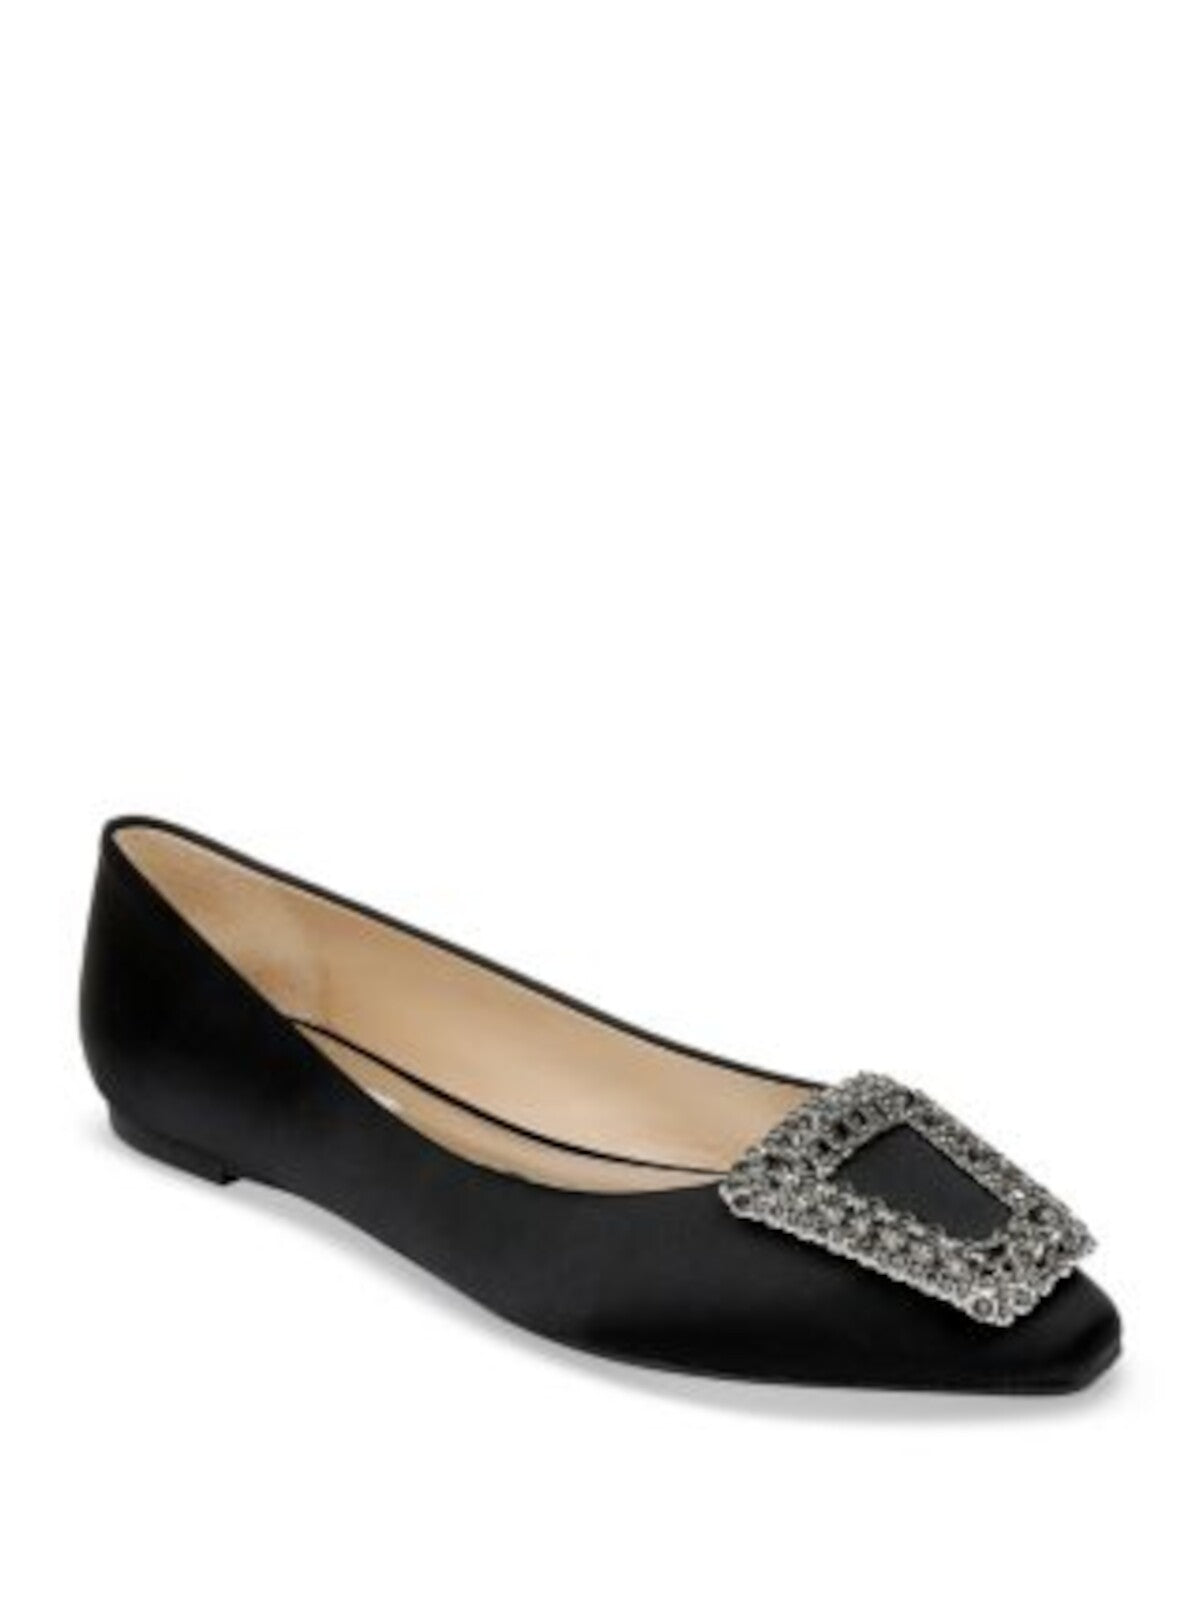 BADGLEY MISCHKA Womens Black Embellished Hardware Rhinestone Padded Emerie Pointed Toe Slip On Flats Shoes 6.5